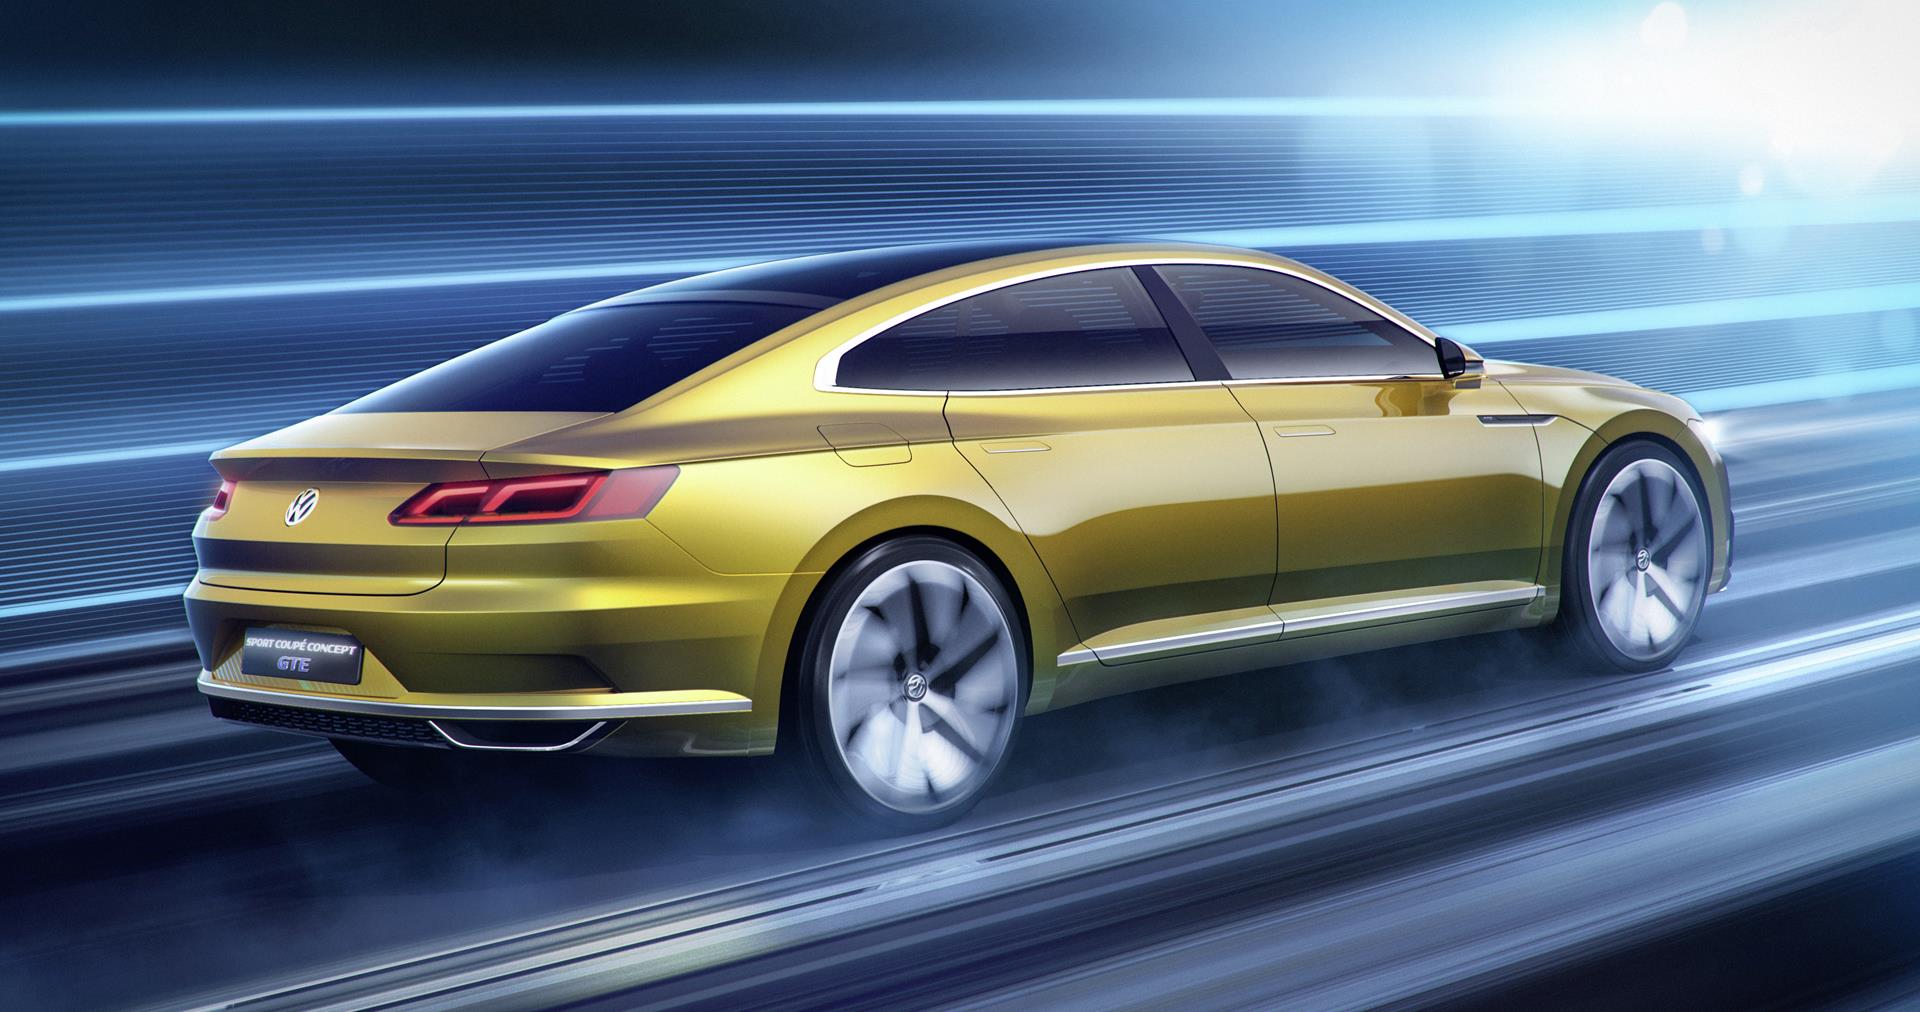 2015 Volkswagen Sport Coupé Concept GTE